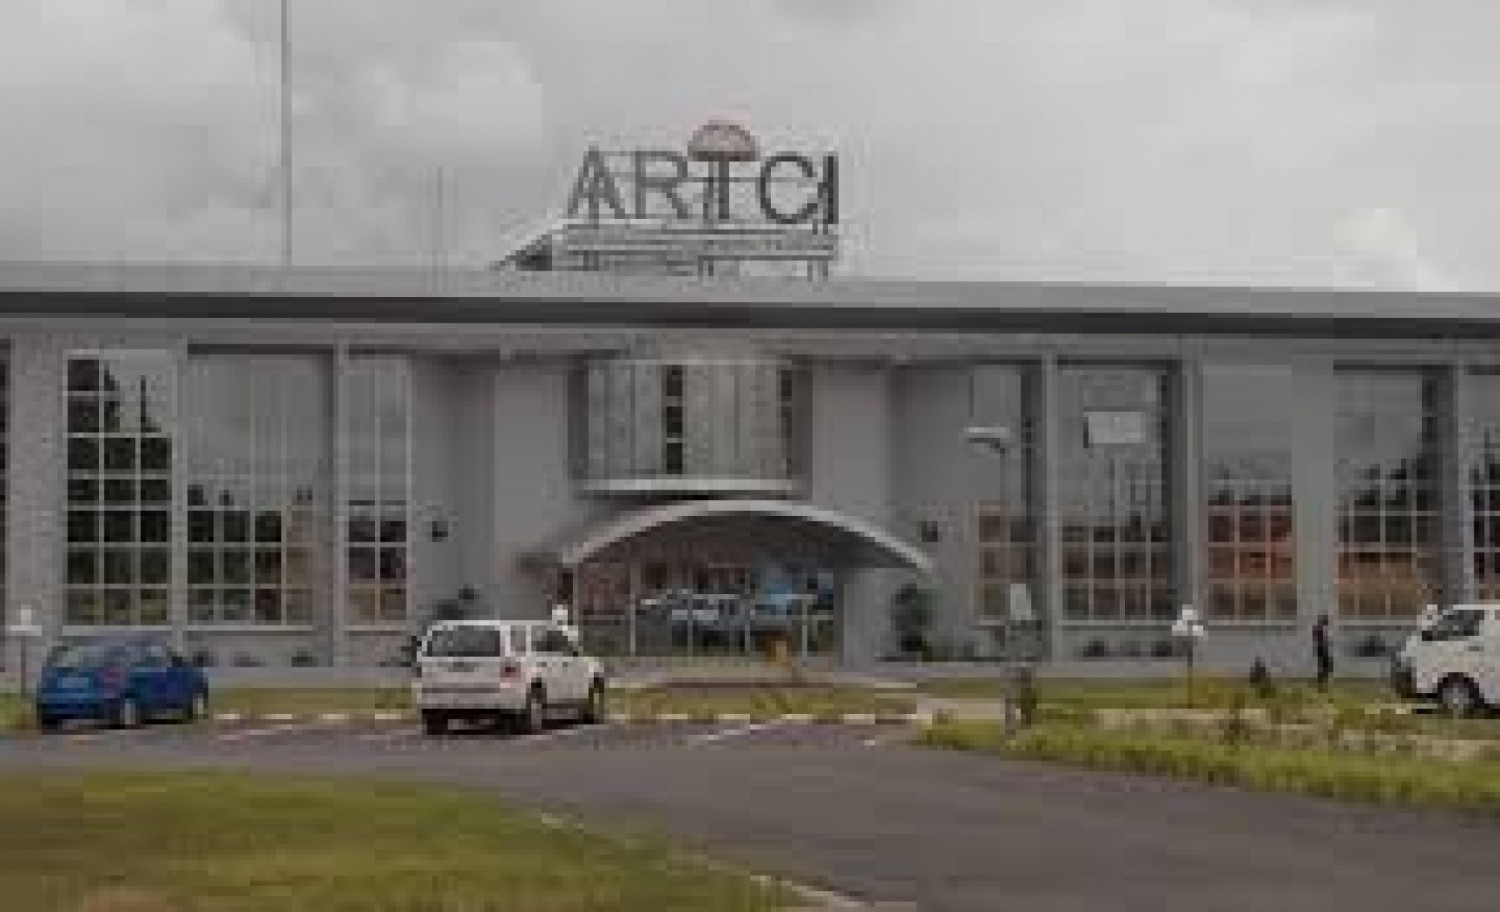 Côte d'Ivoire : Une plainte déposée à l'ARTCI contre les opérateurs mobiles, ce qu'une association de consommateurs leur reproche